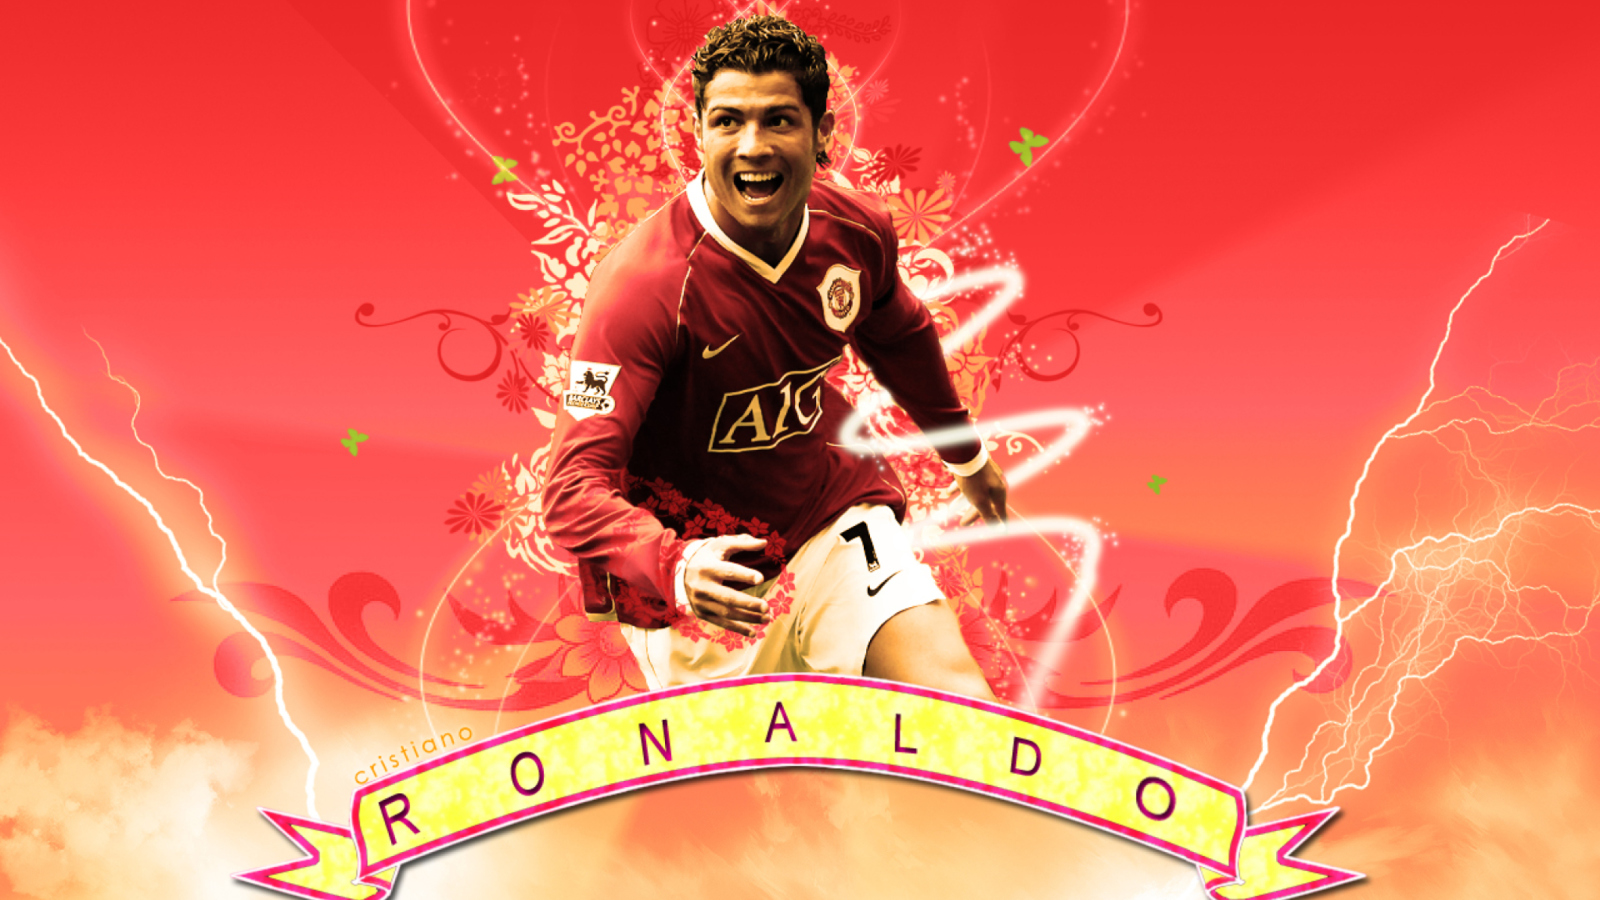 Cristiano Ronaldo wallpaper 1600x900